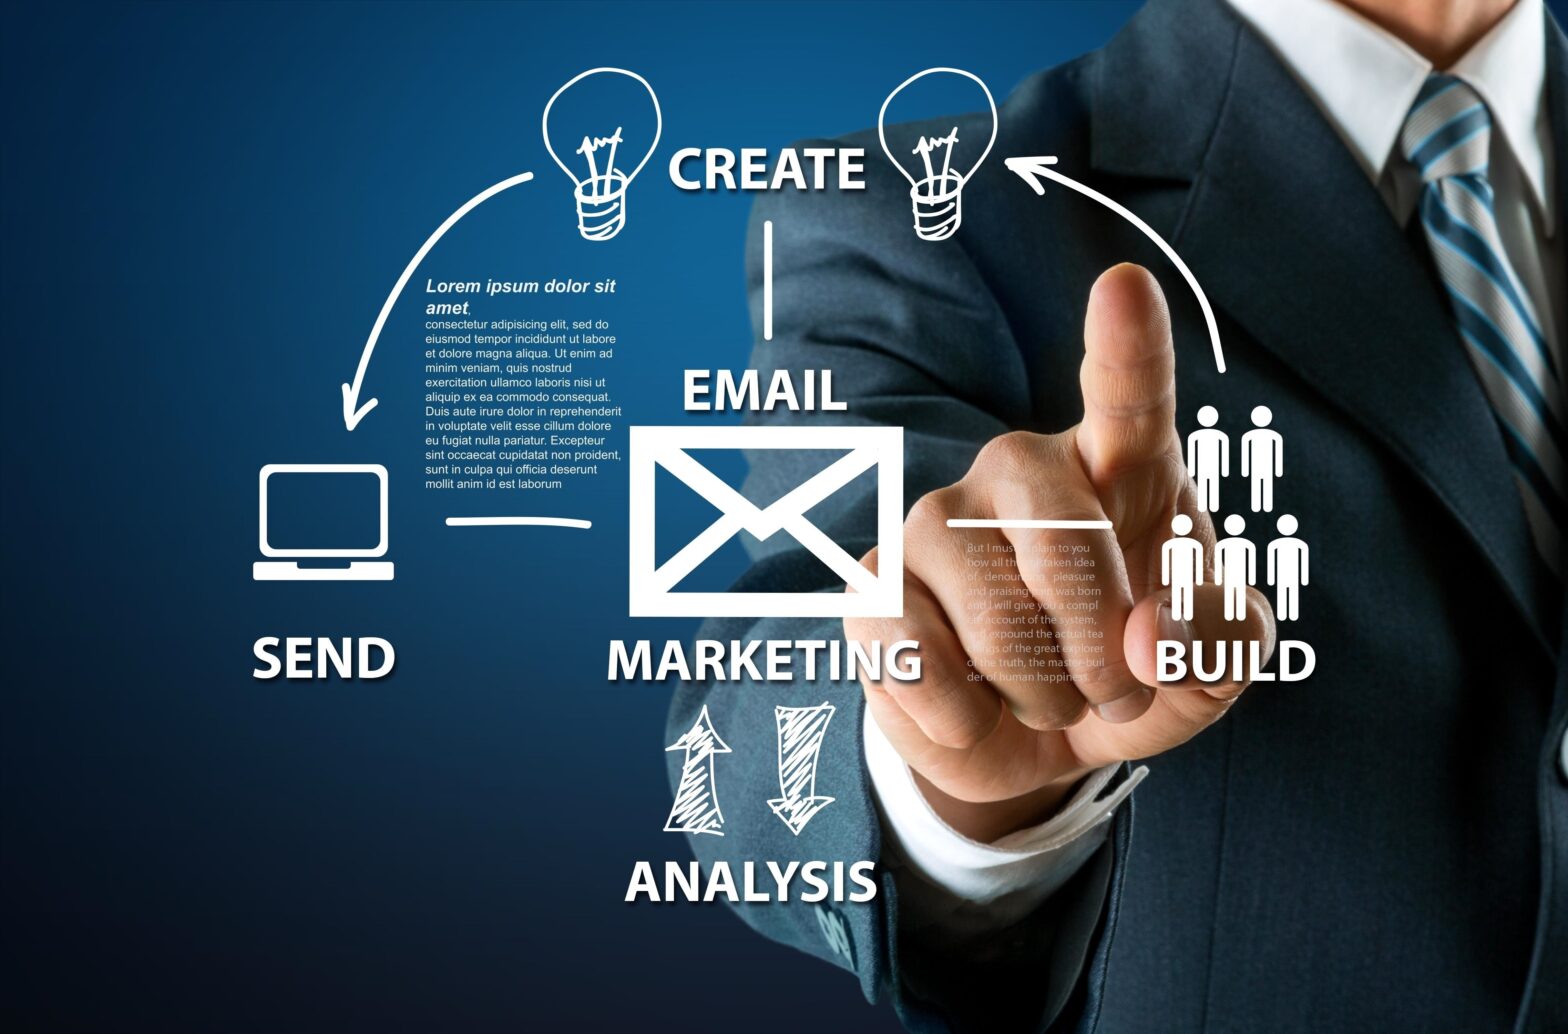 Email Marketing Market